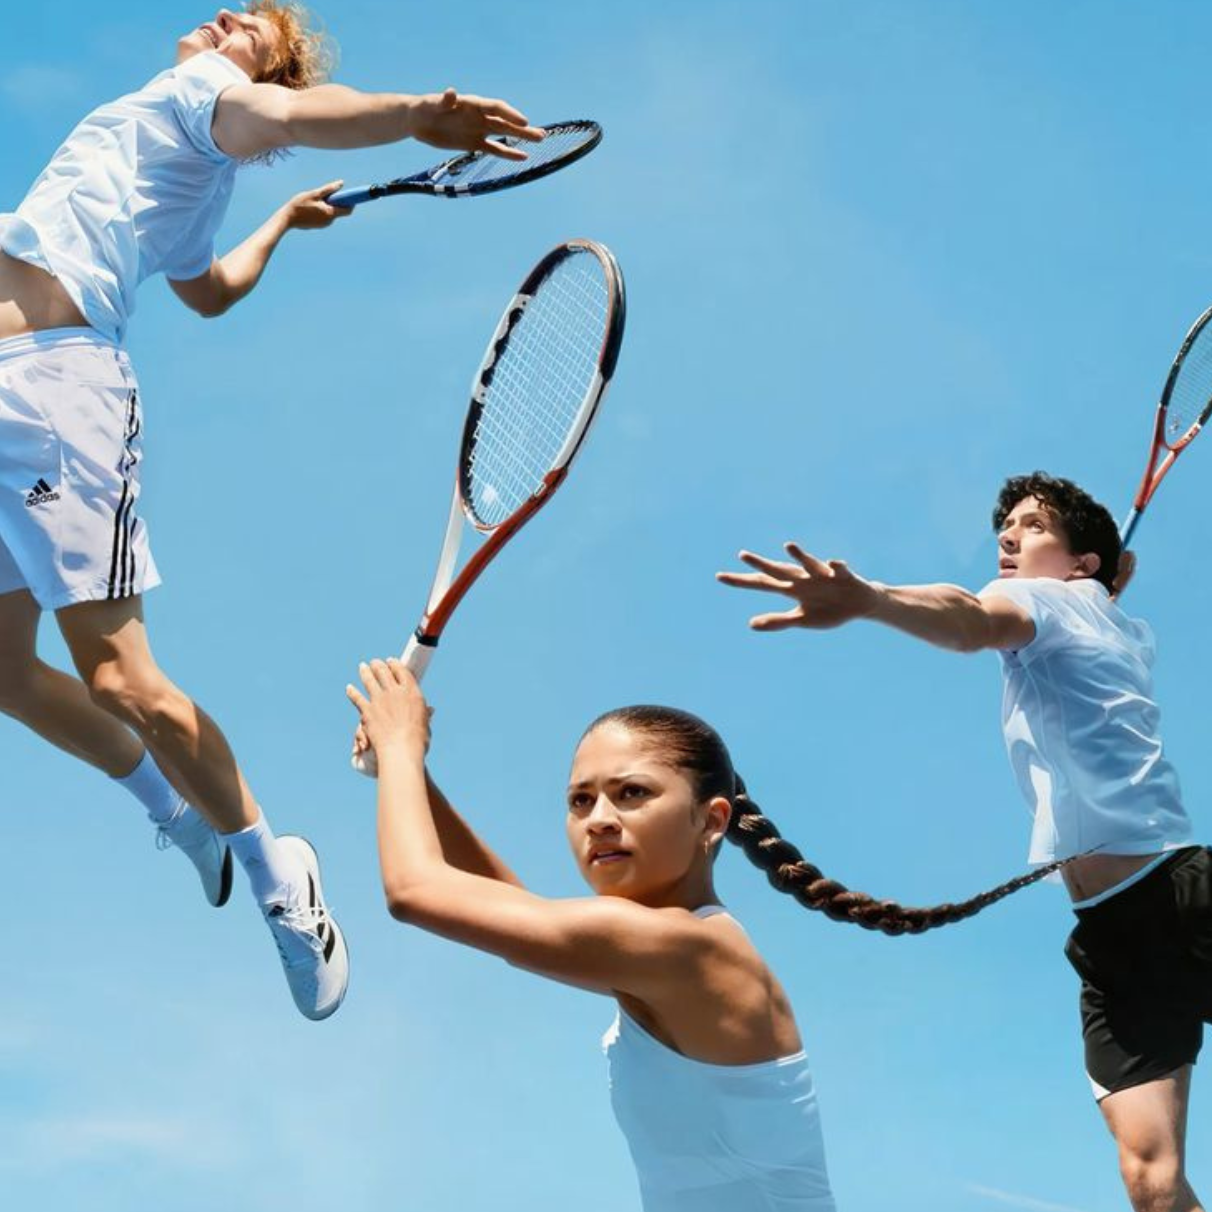 "RIVALOVÉ" - Nový film se Zendayou a.k.a. jak tenisová móda dobývá svět